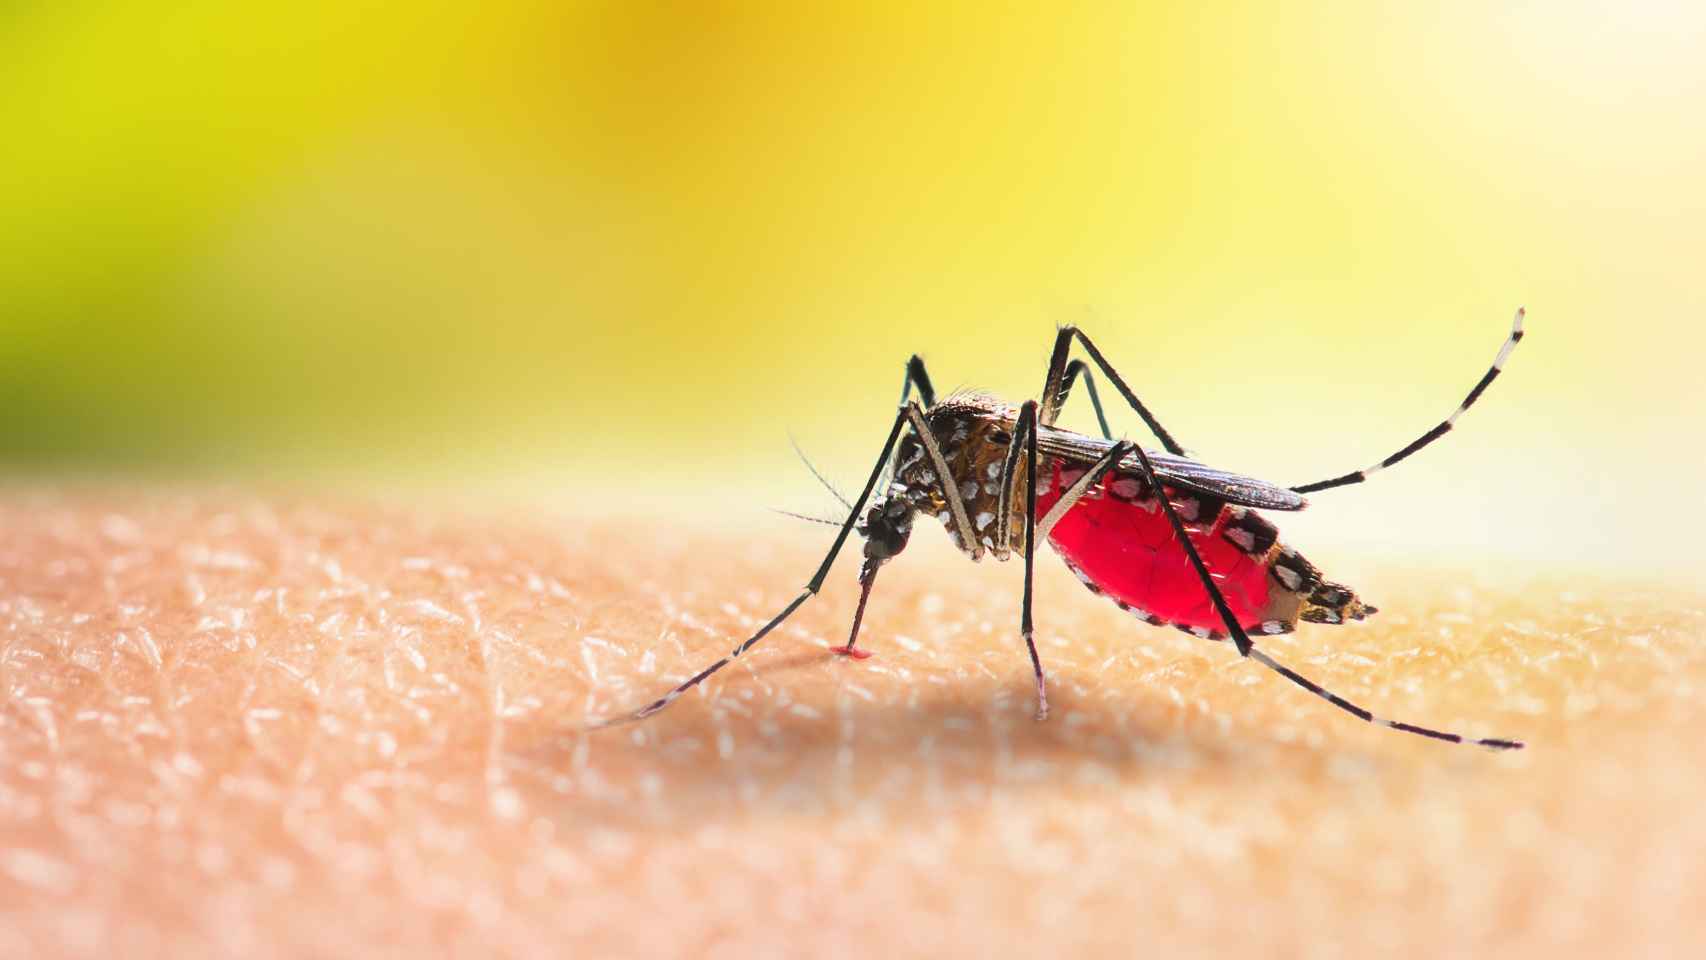 Mosquito Aedes chupando sangre en la piel humana